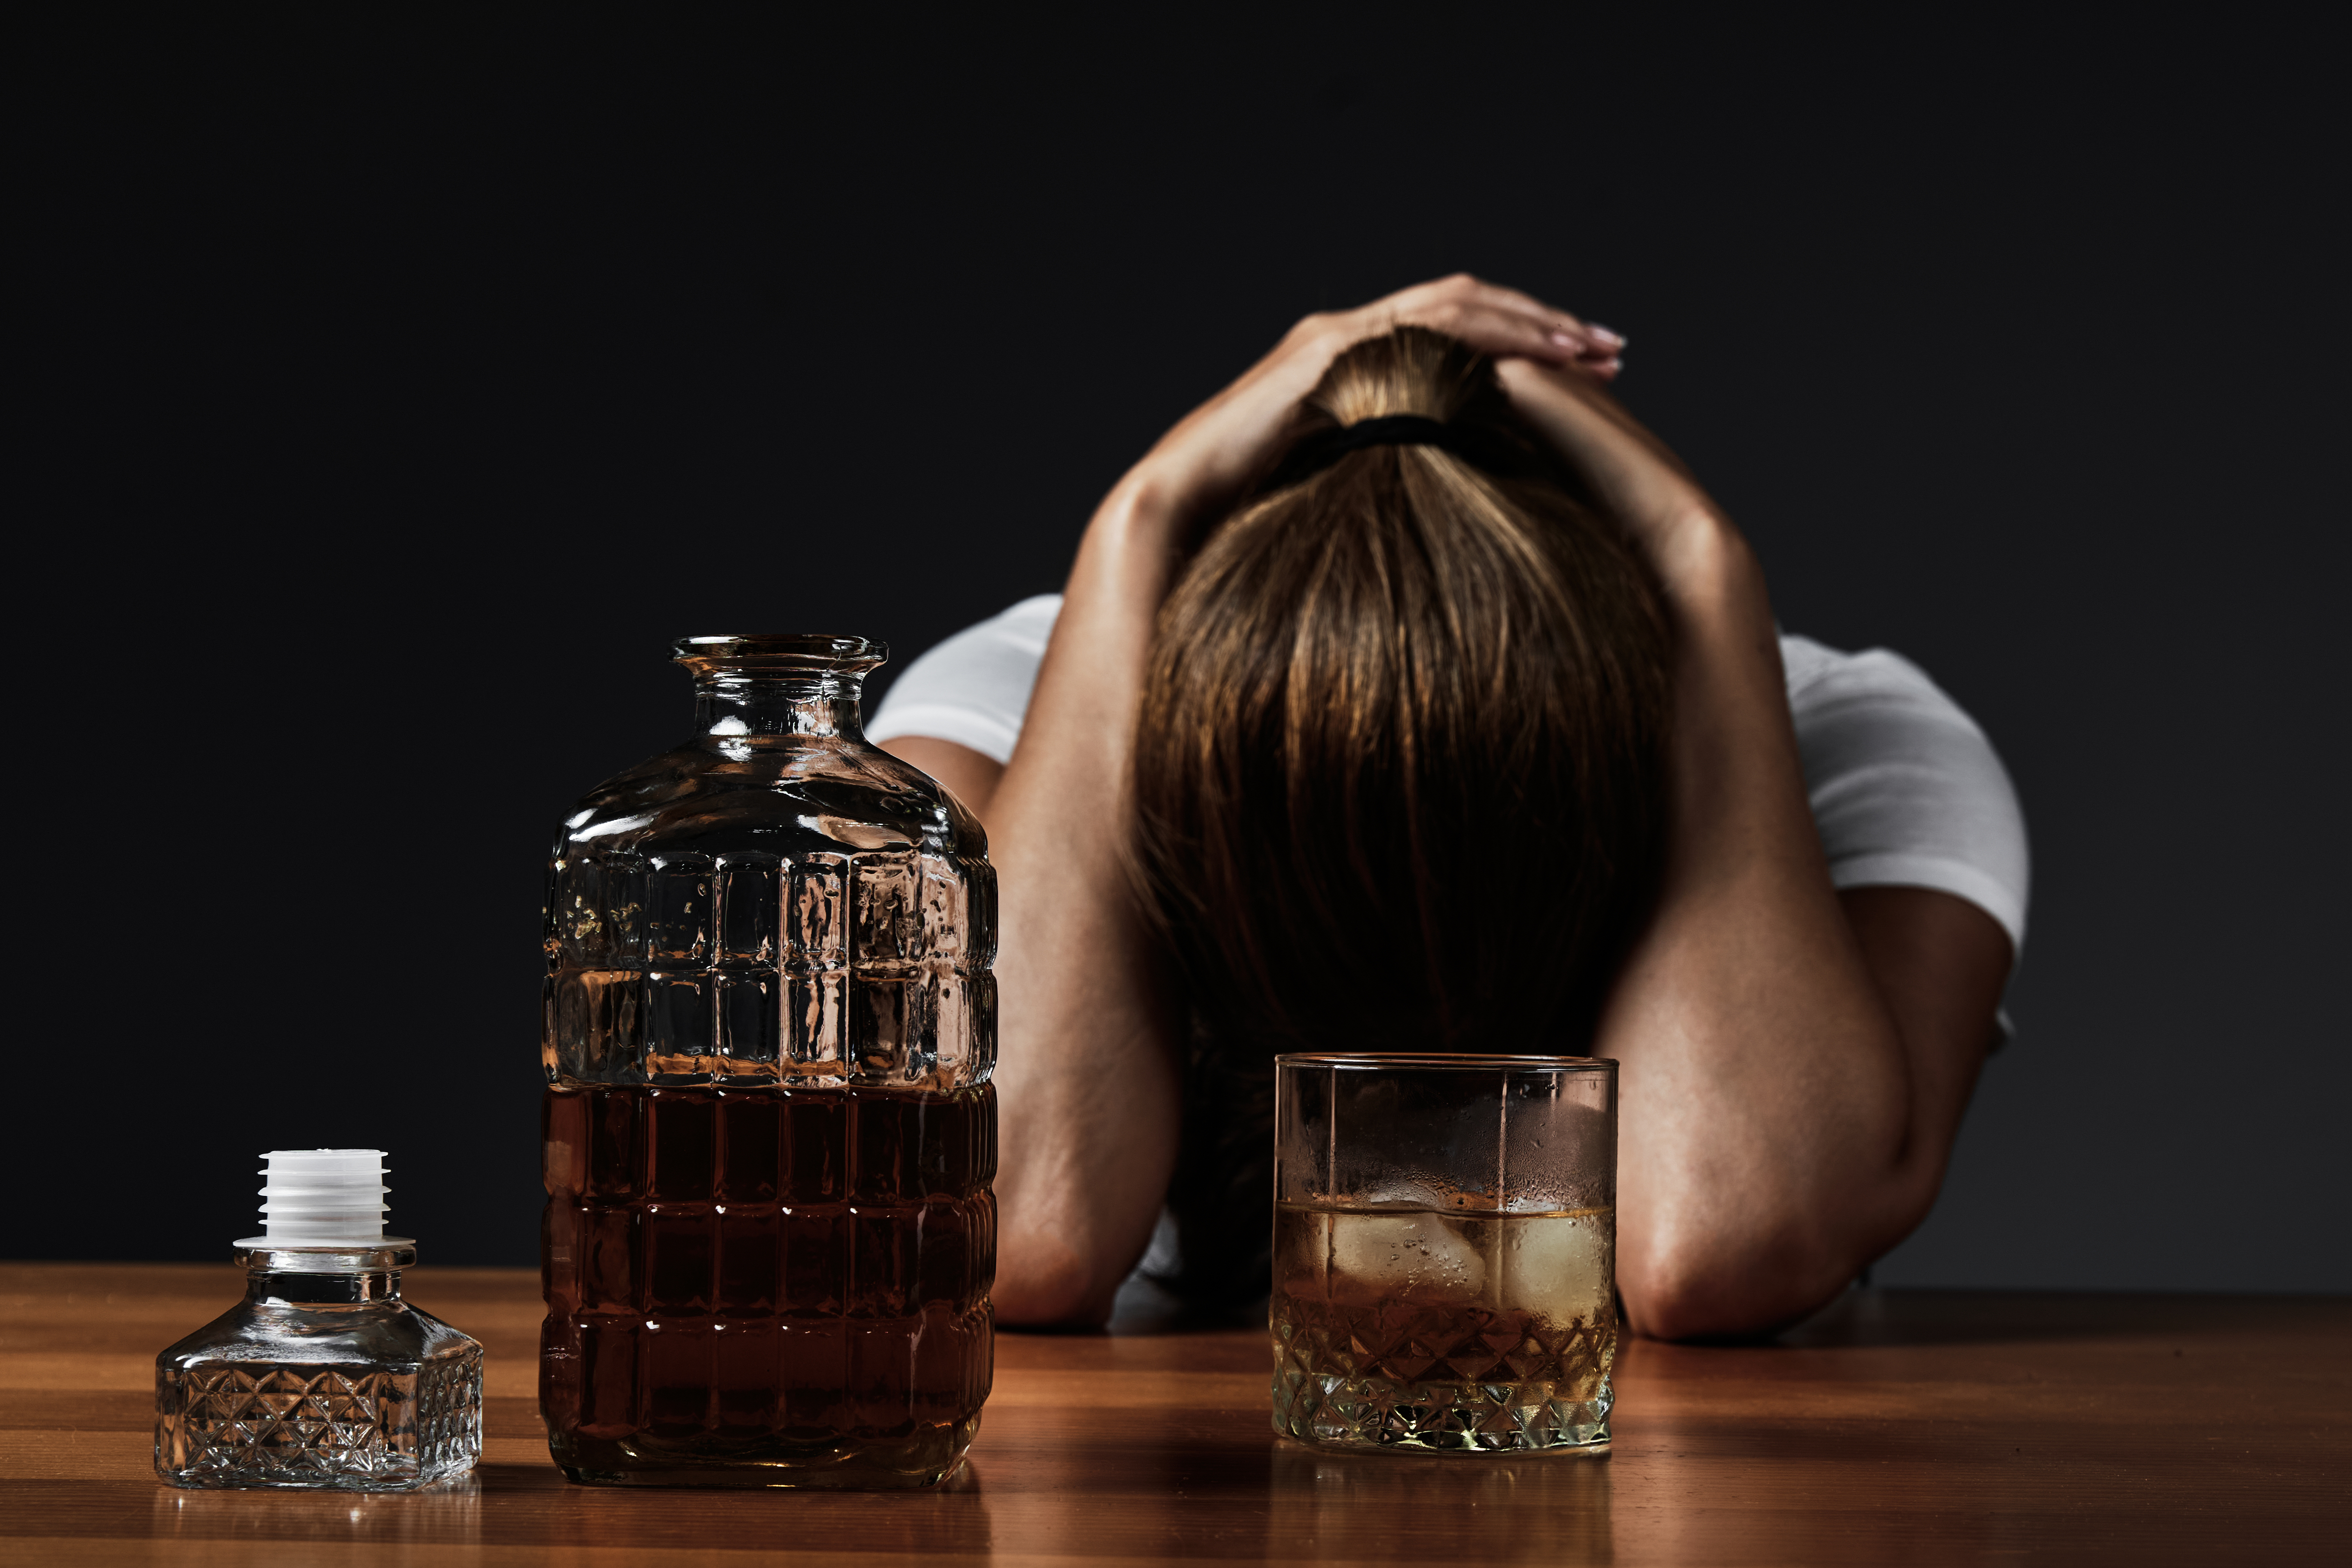 Los resultados mostraron que los adolescentes y adultos jóvenes que informaron haber bebido solos tenían un mayor riesgo de desarrollar síntomas de trastornos por consumo de alcohol en la edad adulta